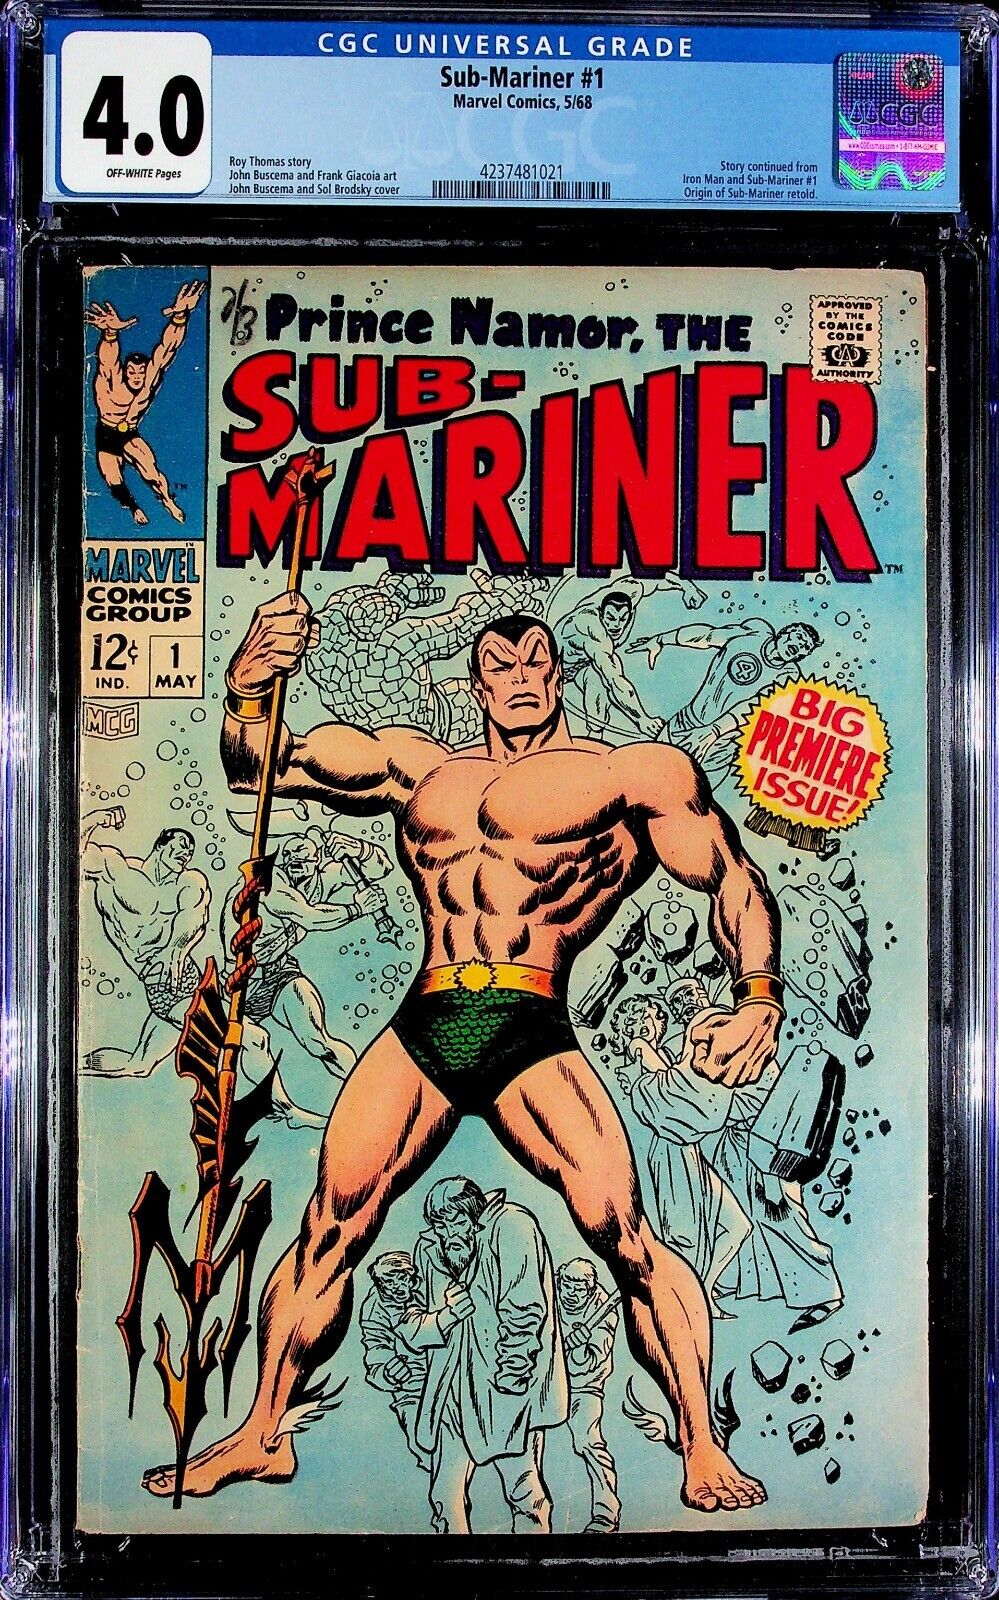 Sub-Mariner #1 CGC 4.0 Origin of Sub-Mariner Retold, Marvel Comics 1968.